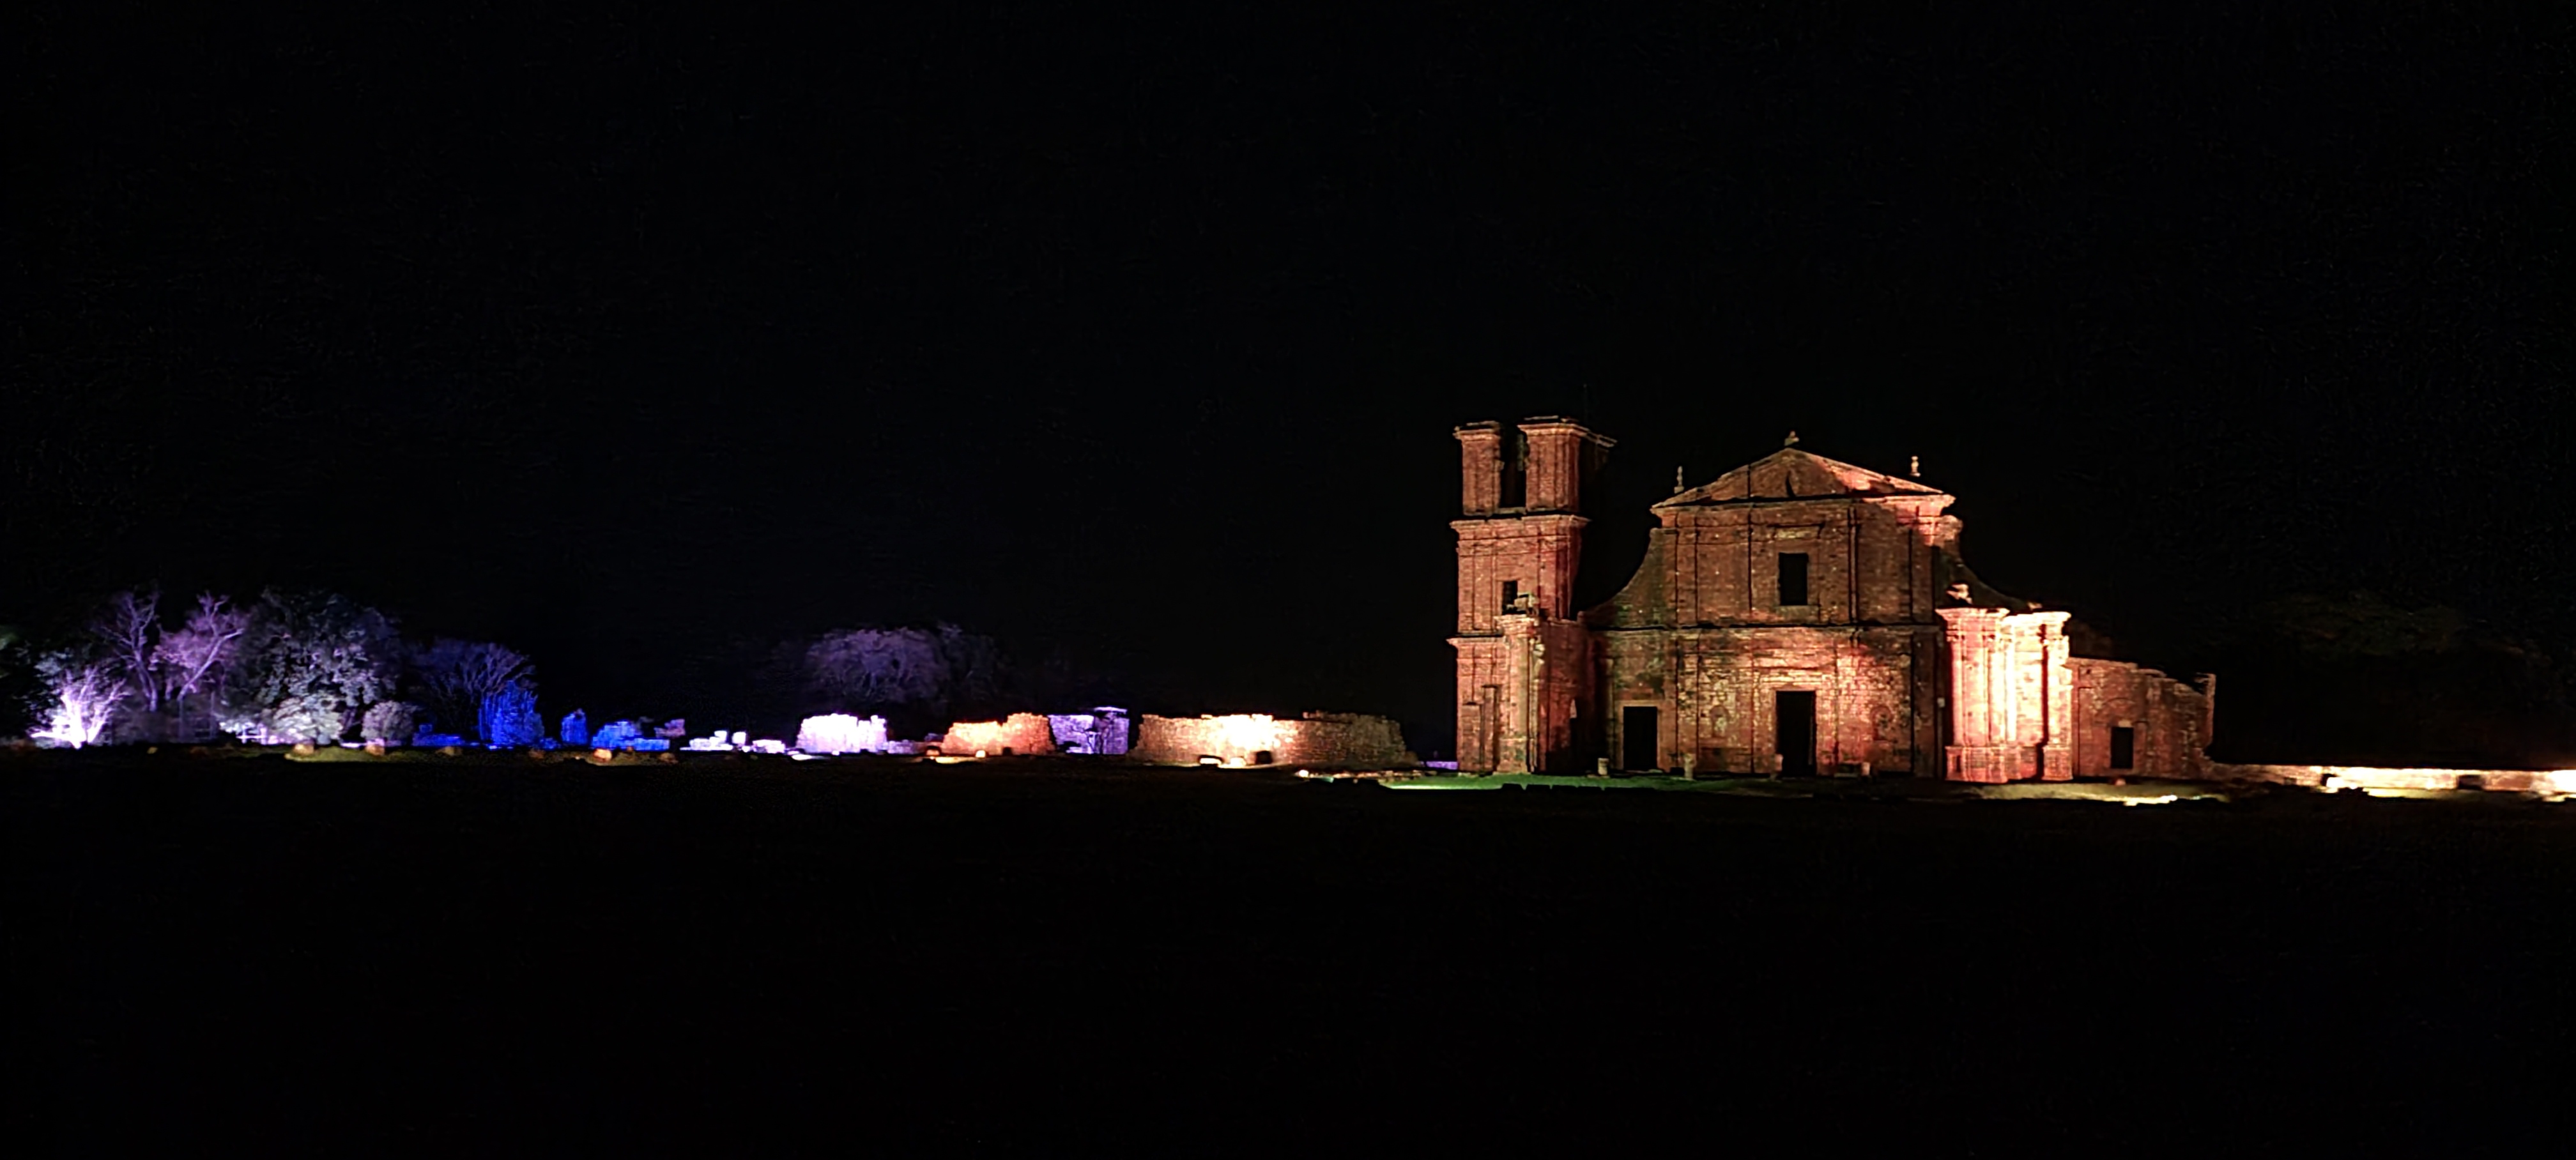 Sitio Arqueológico de São Miguel das Missões iluminado no show noturno